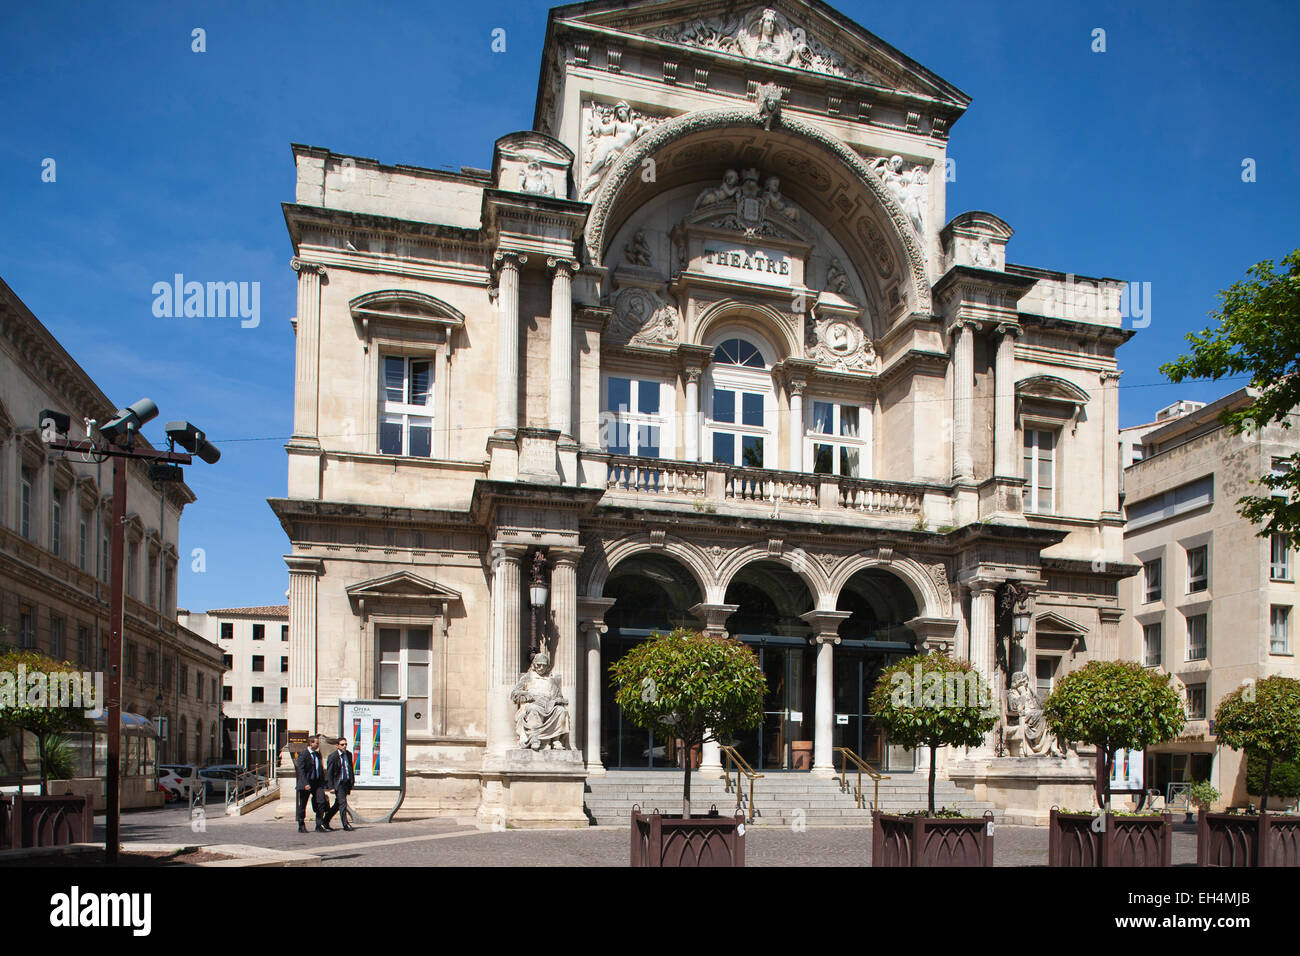 Théâtre de l'opéra, place de l'échevinage, Avignon, Provence, France, Europe Banque D'Images